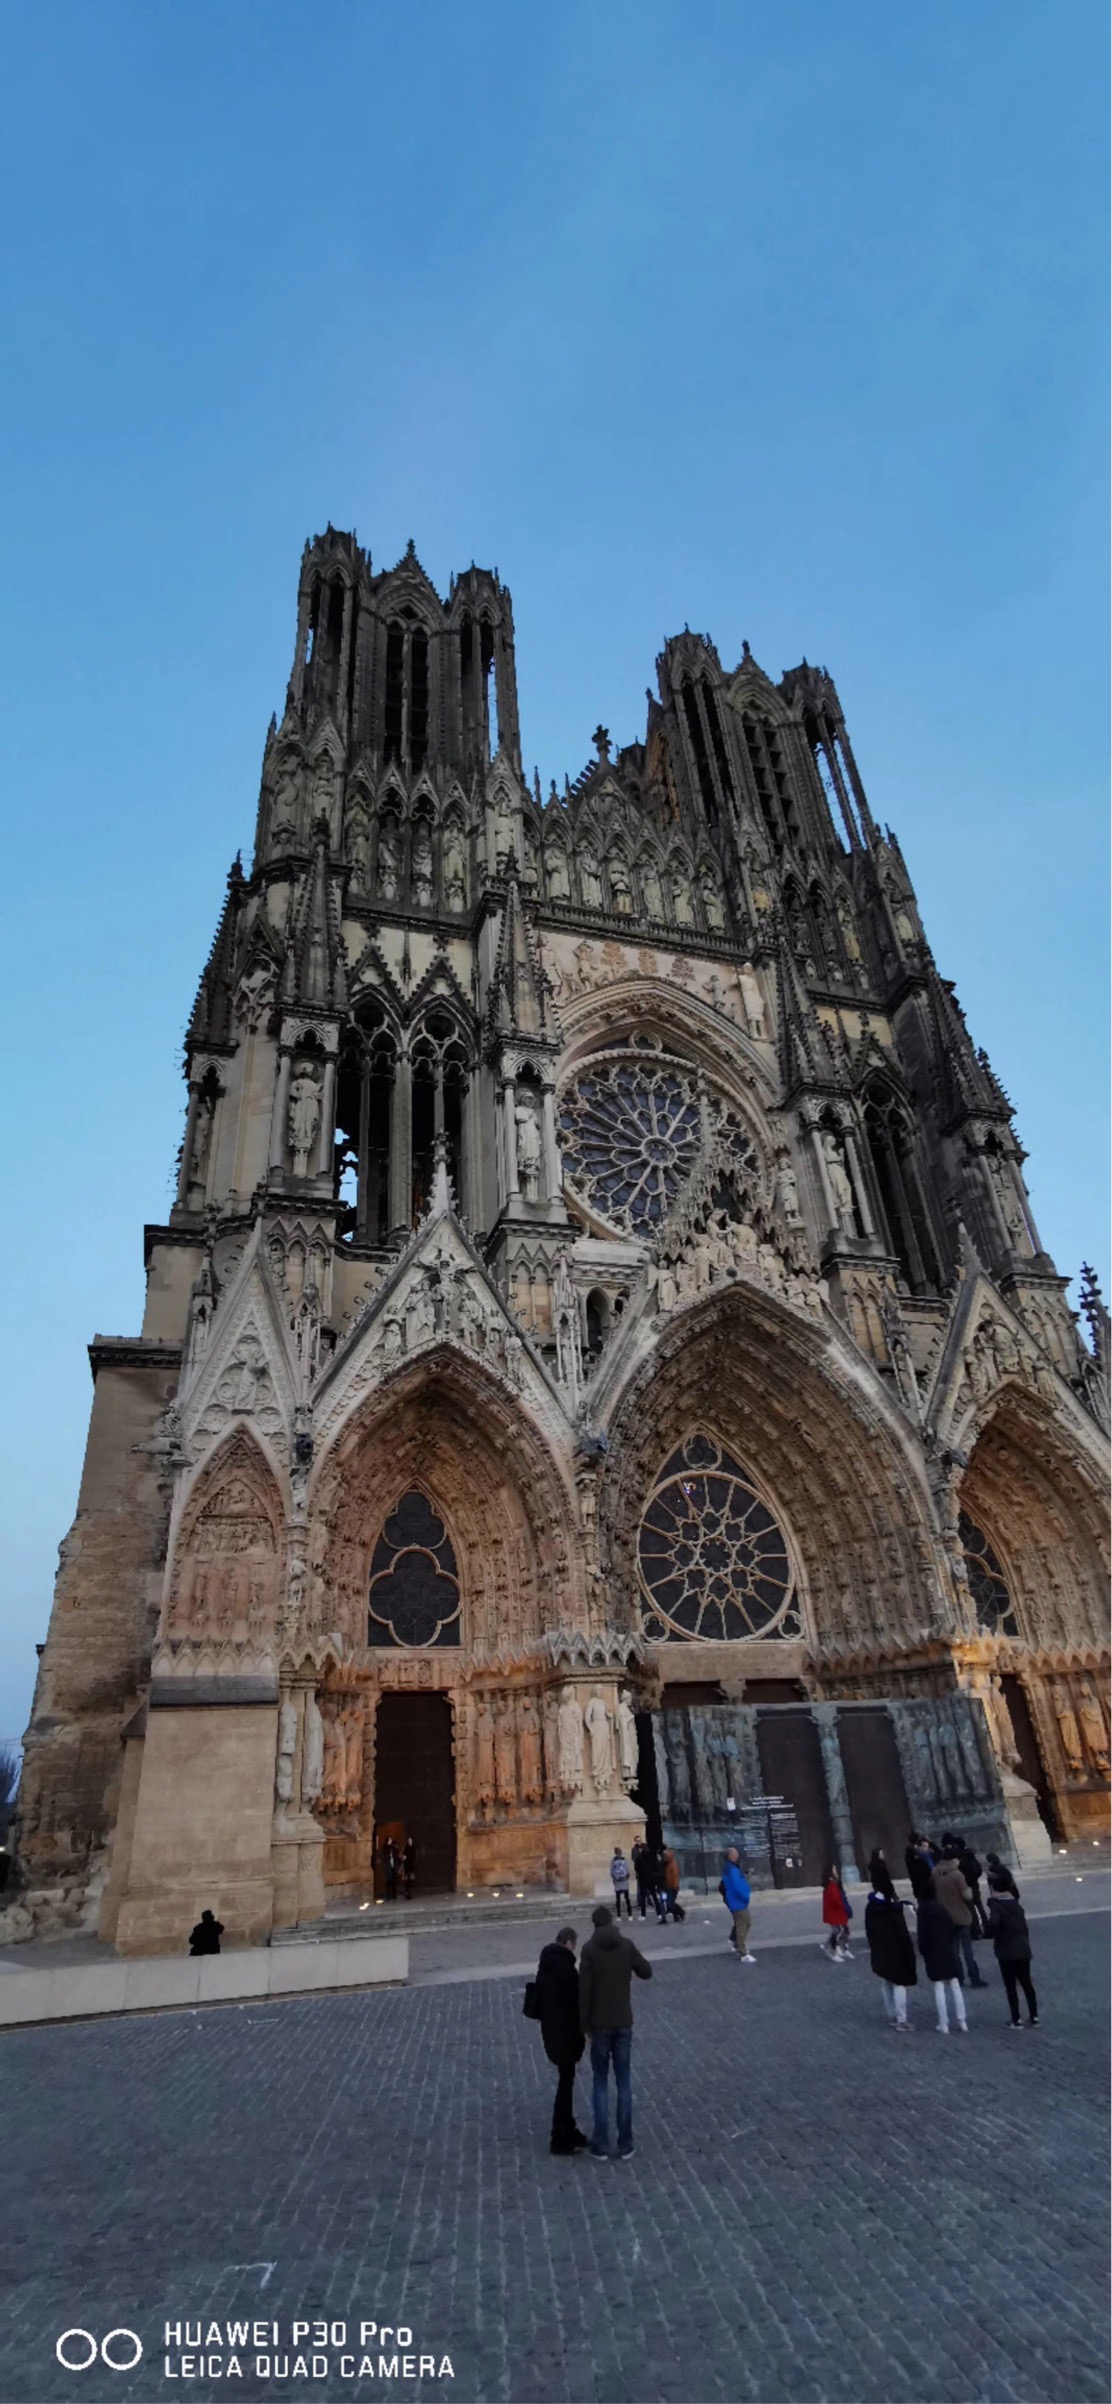 一直觉得建筑的美是可以打动人心的 堪比巴黎圣母院、拥有八百多年历史的兰斯圣母大教堂！玻璃镶嵌画真好看